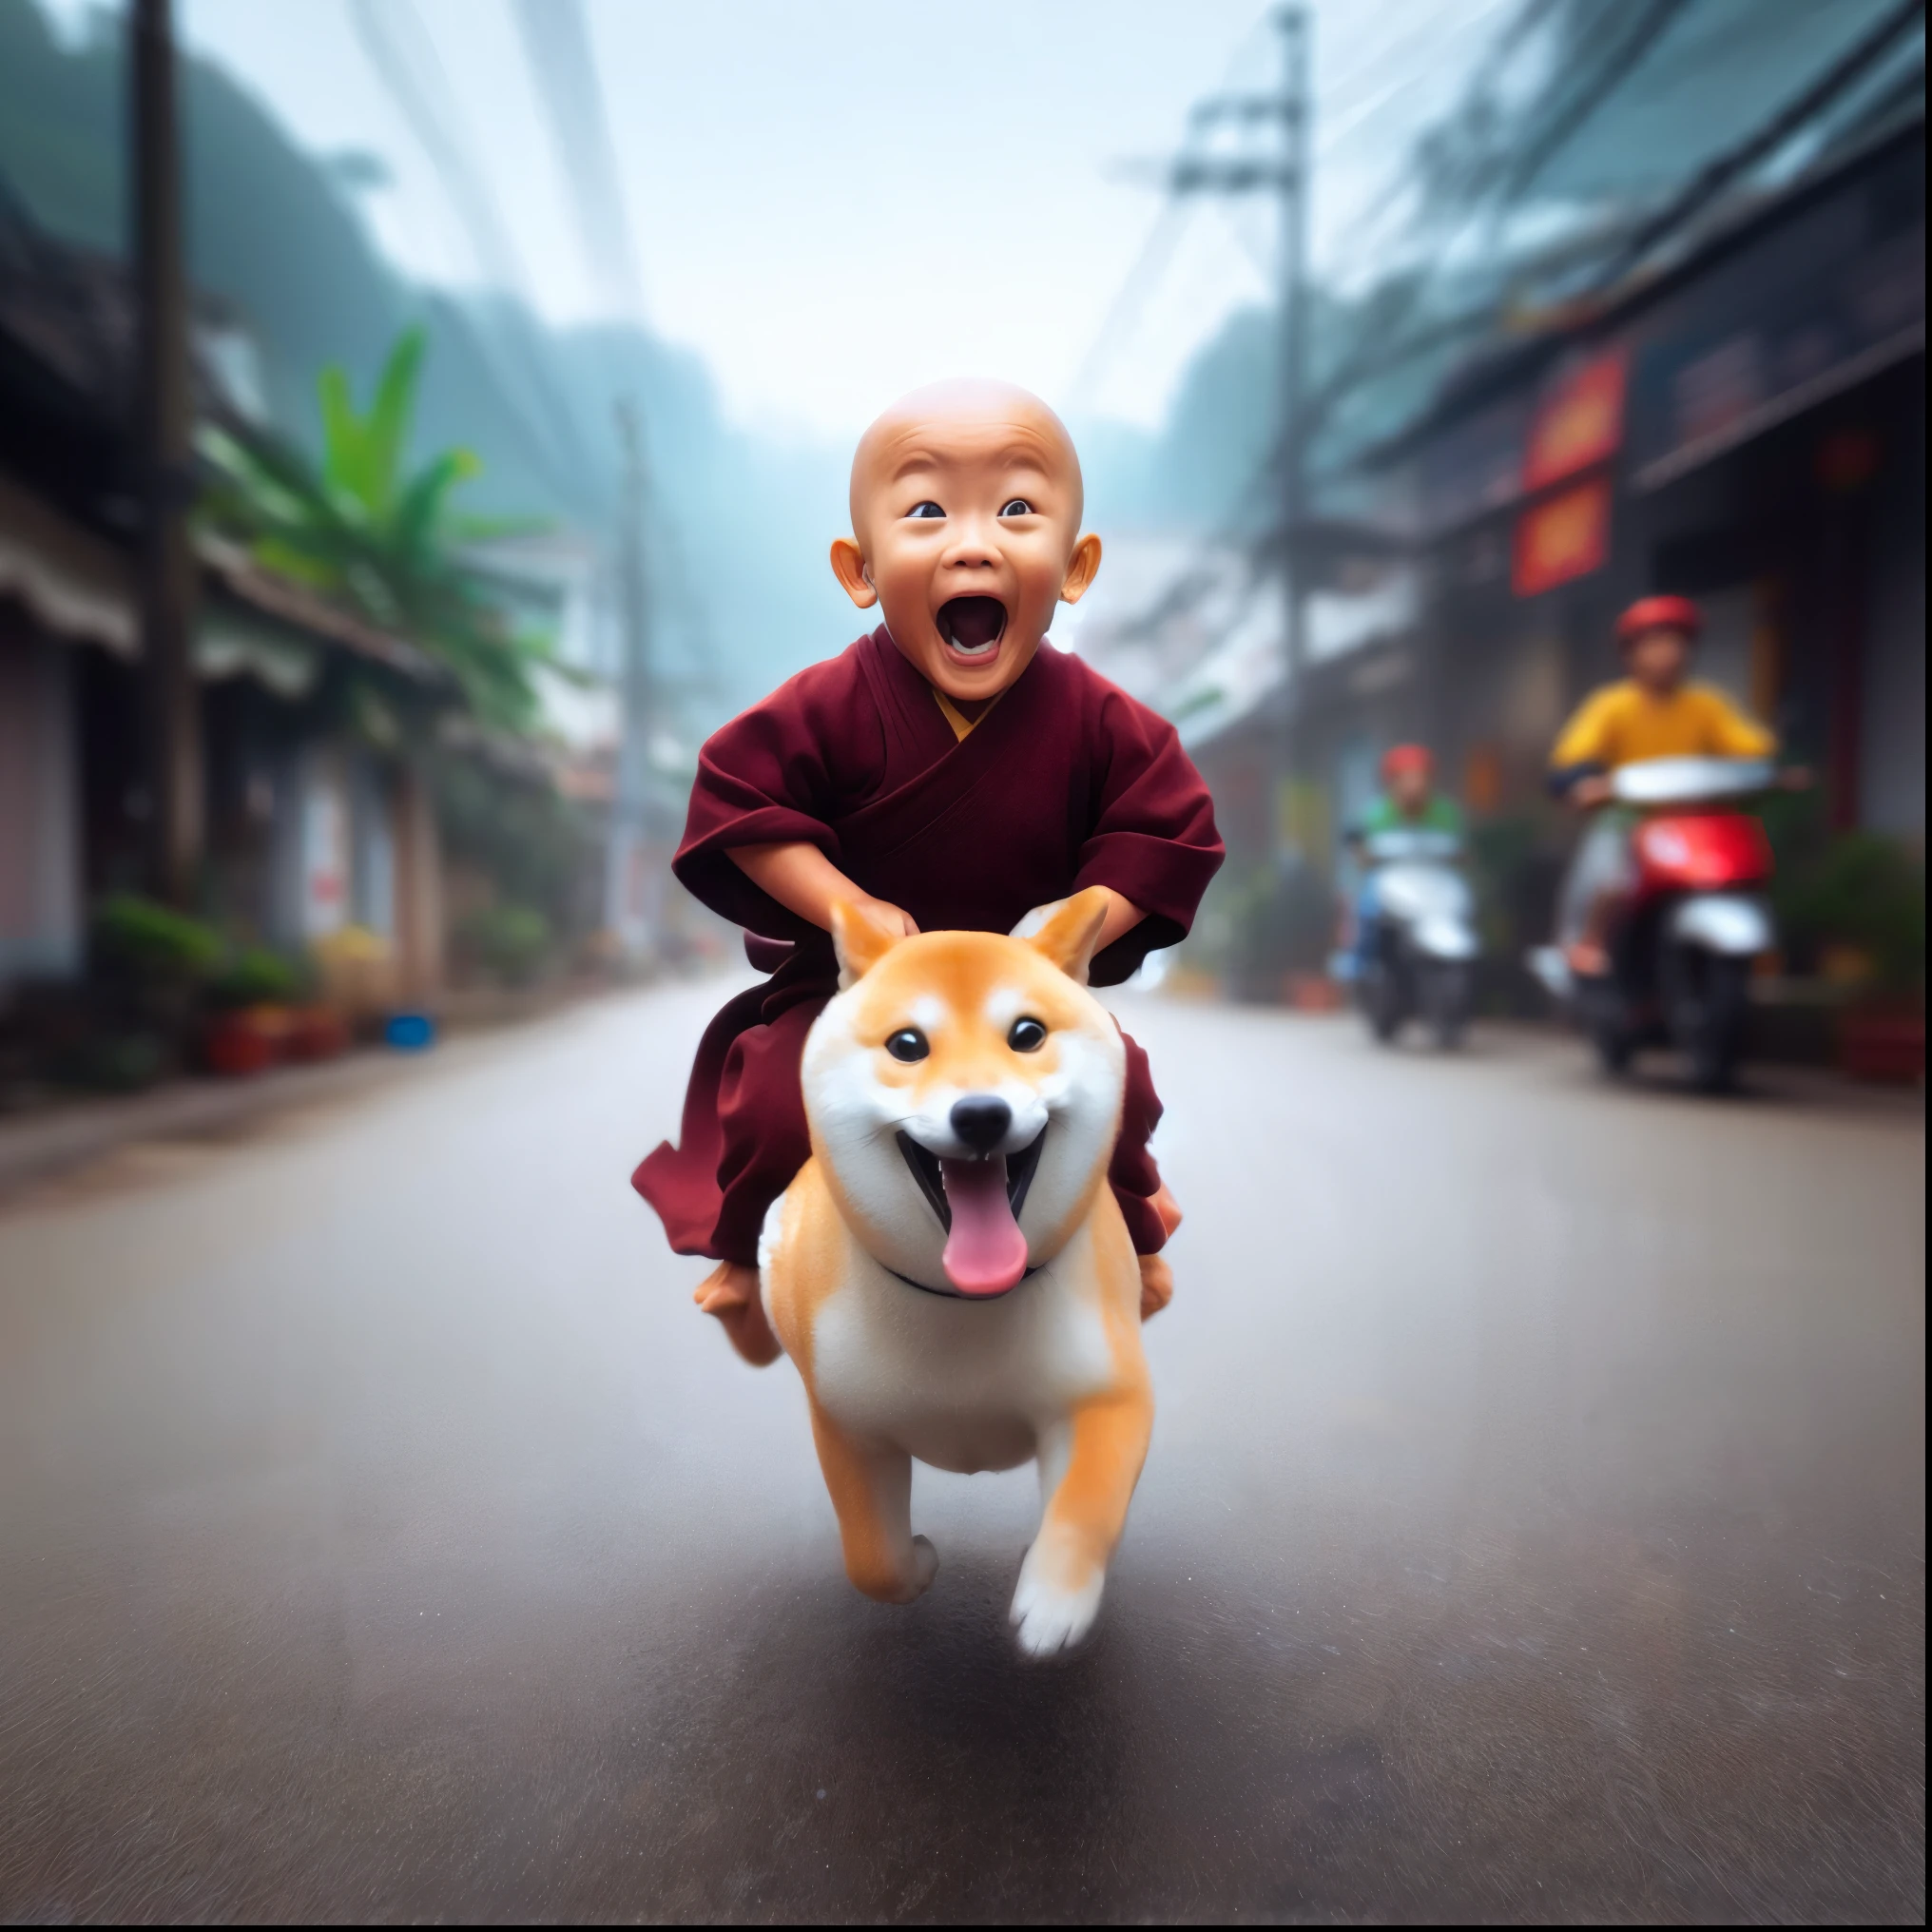 arafed image of a 僧侶 riding a dog on a street, 佛教徒, 狗如神, 2 1 st century 僧侶, 驚人的深度, 總督, 佛教, 驚人的, 和他過動的小狗, guweiz 風格的藝術品, 可愛的數位繪畫, 僧侶, 他很高興, 純粹的喜悅, 靈感來自芝公館